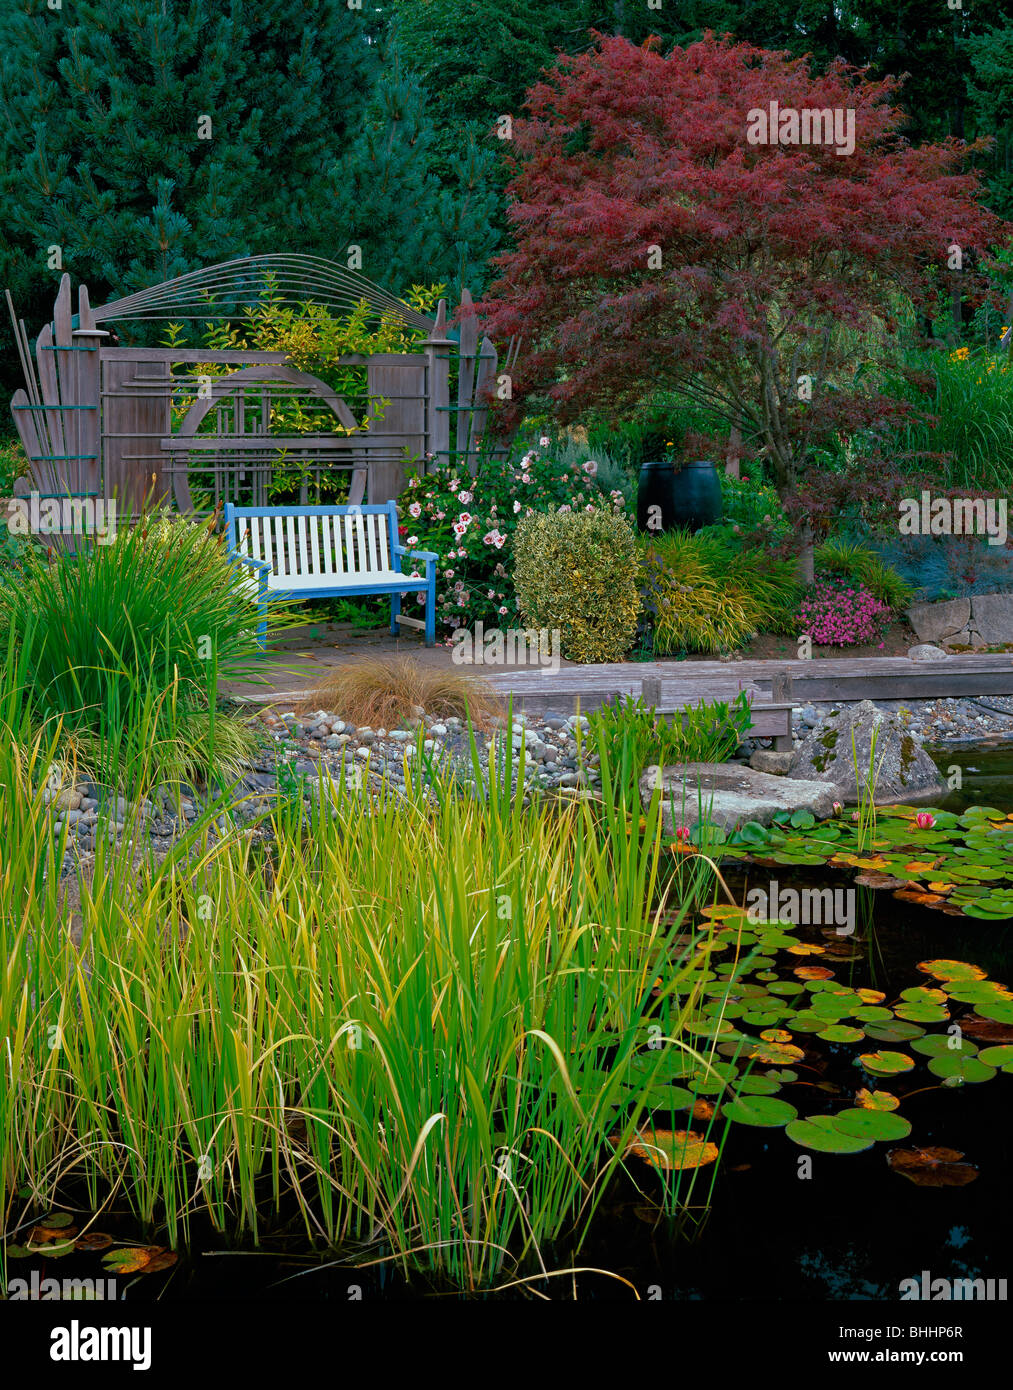 Vashon, WA: Fantasievolle Zeder Bildschirm und bunte Bank bietet einen ruhenden Platz mit Blick auf einen ruhigen Teich mit Seerosen und Gräser Stockfoto